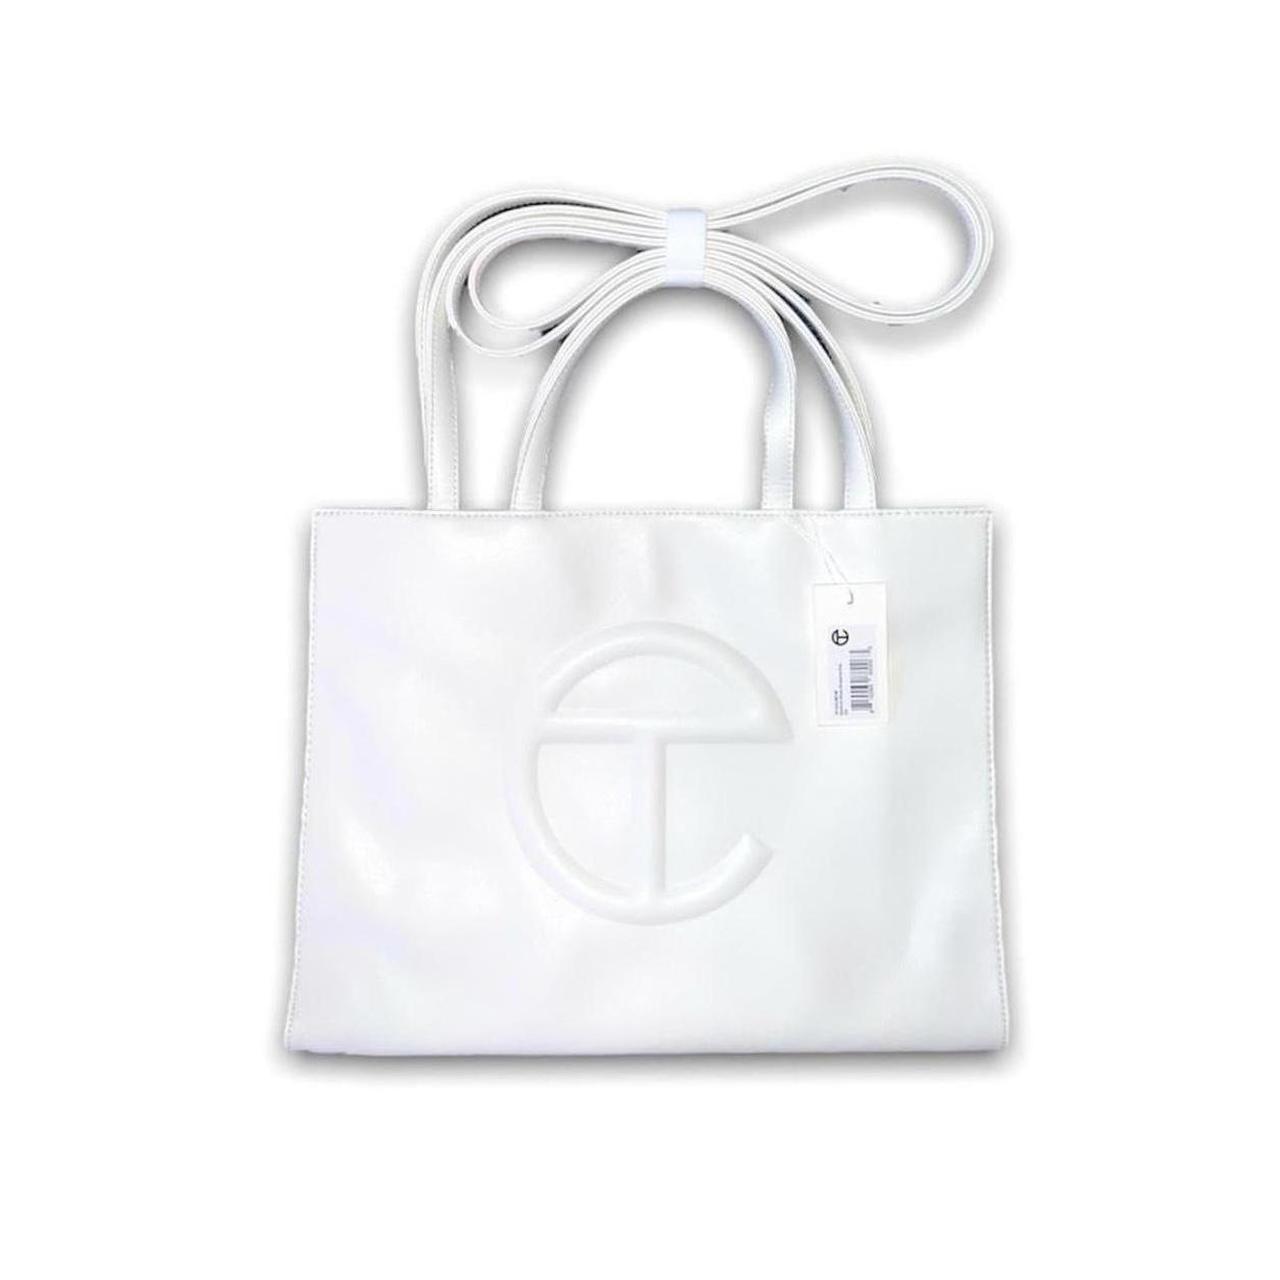 Telfar Shopping Bag Medium White